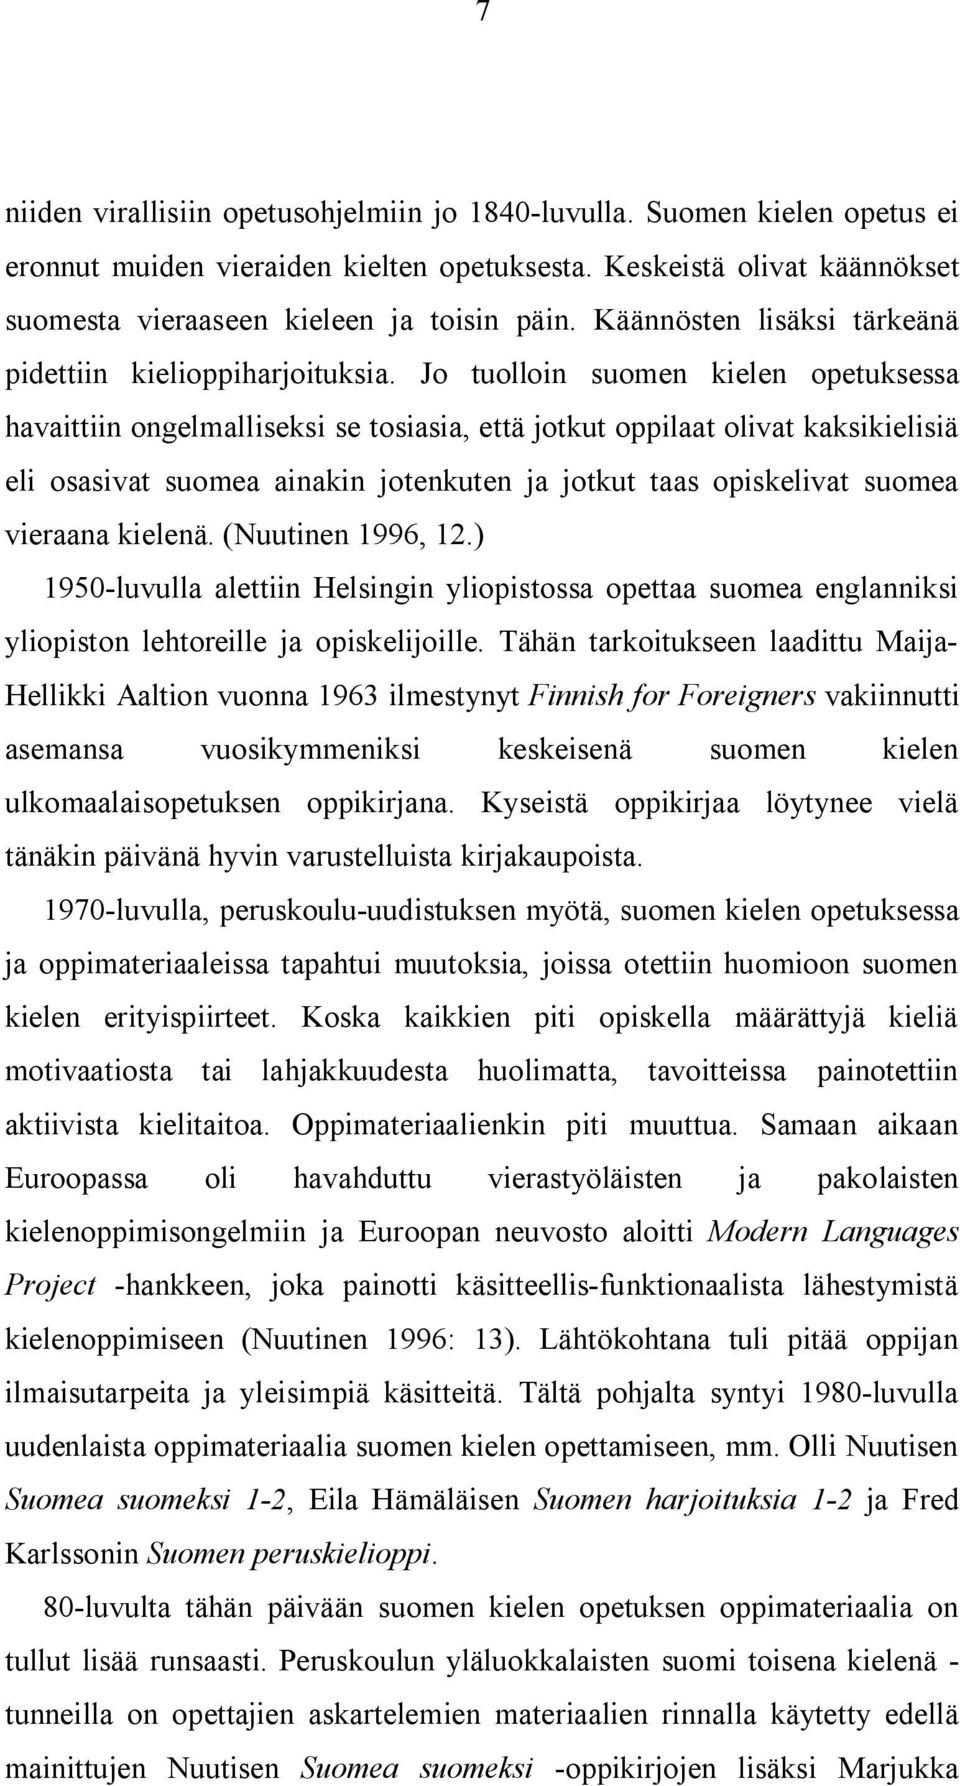 Jo tuolloin suomen kielen opetuksessa havaittiin ongelmalliseksi se tosiasia, että jotkut oppilaat olivat kaksikielisiä eli osasivat suomea ainakin jotenkuten ja jotkut taas opiskelivat suomea